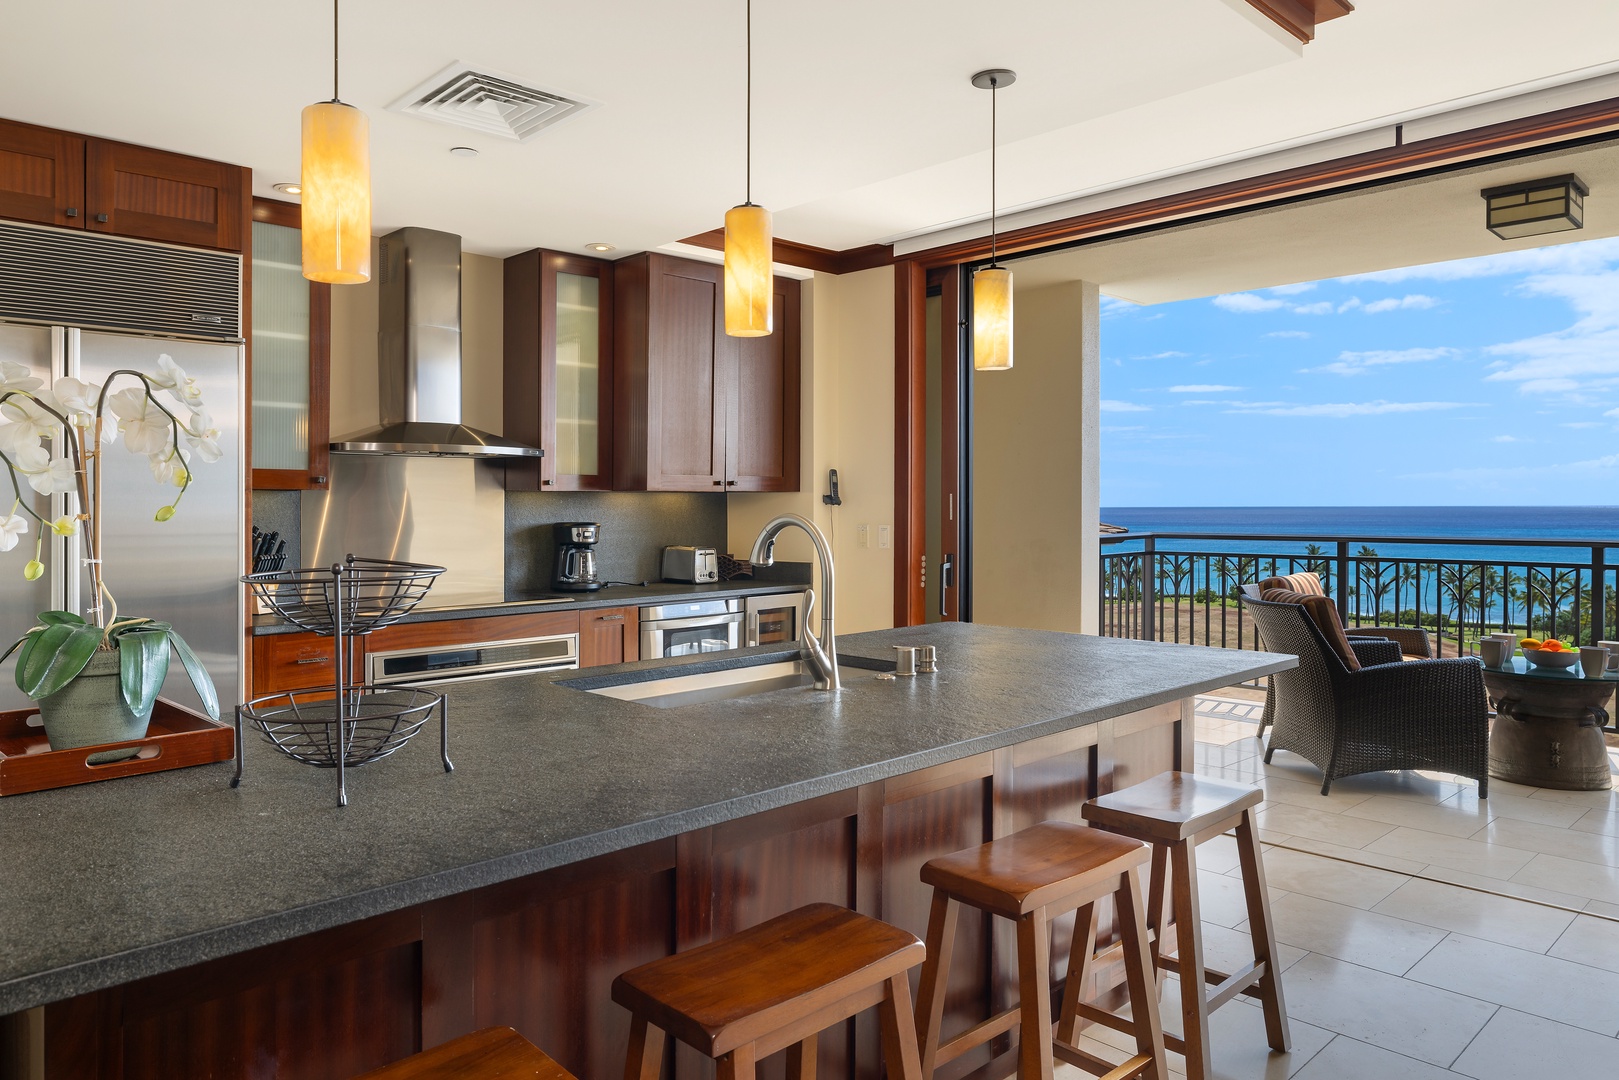 Kapolei Vacation Rentals, Ko Olina Beach Villas O1004 - Bright kitchen with island, bar seating and breathtaking views.